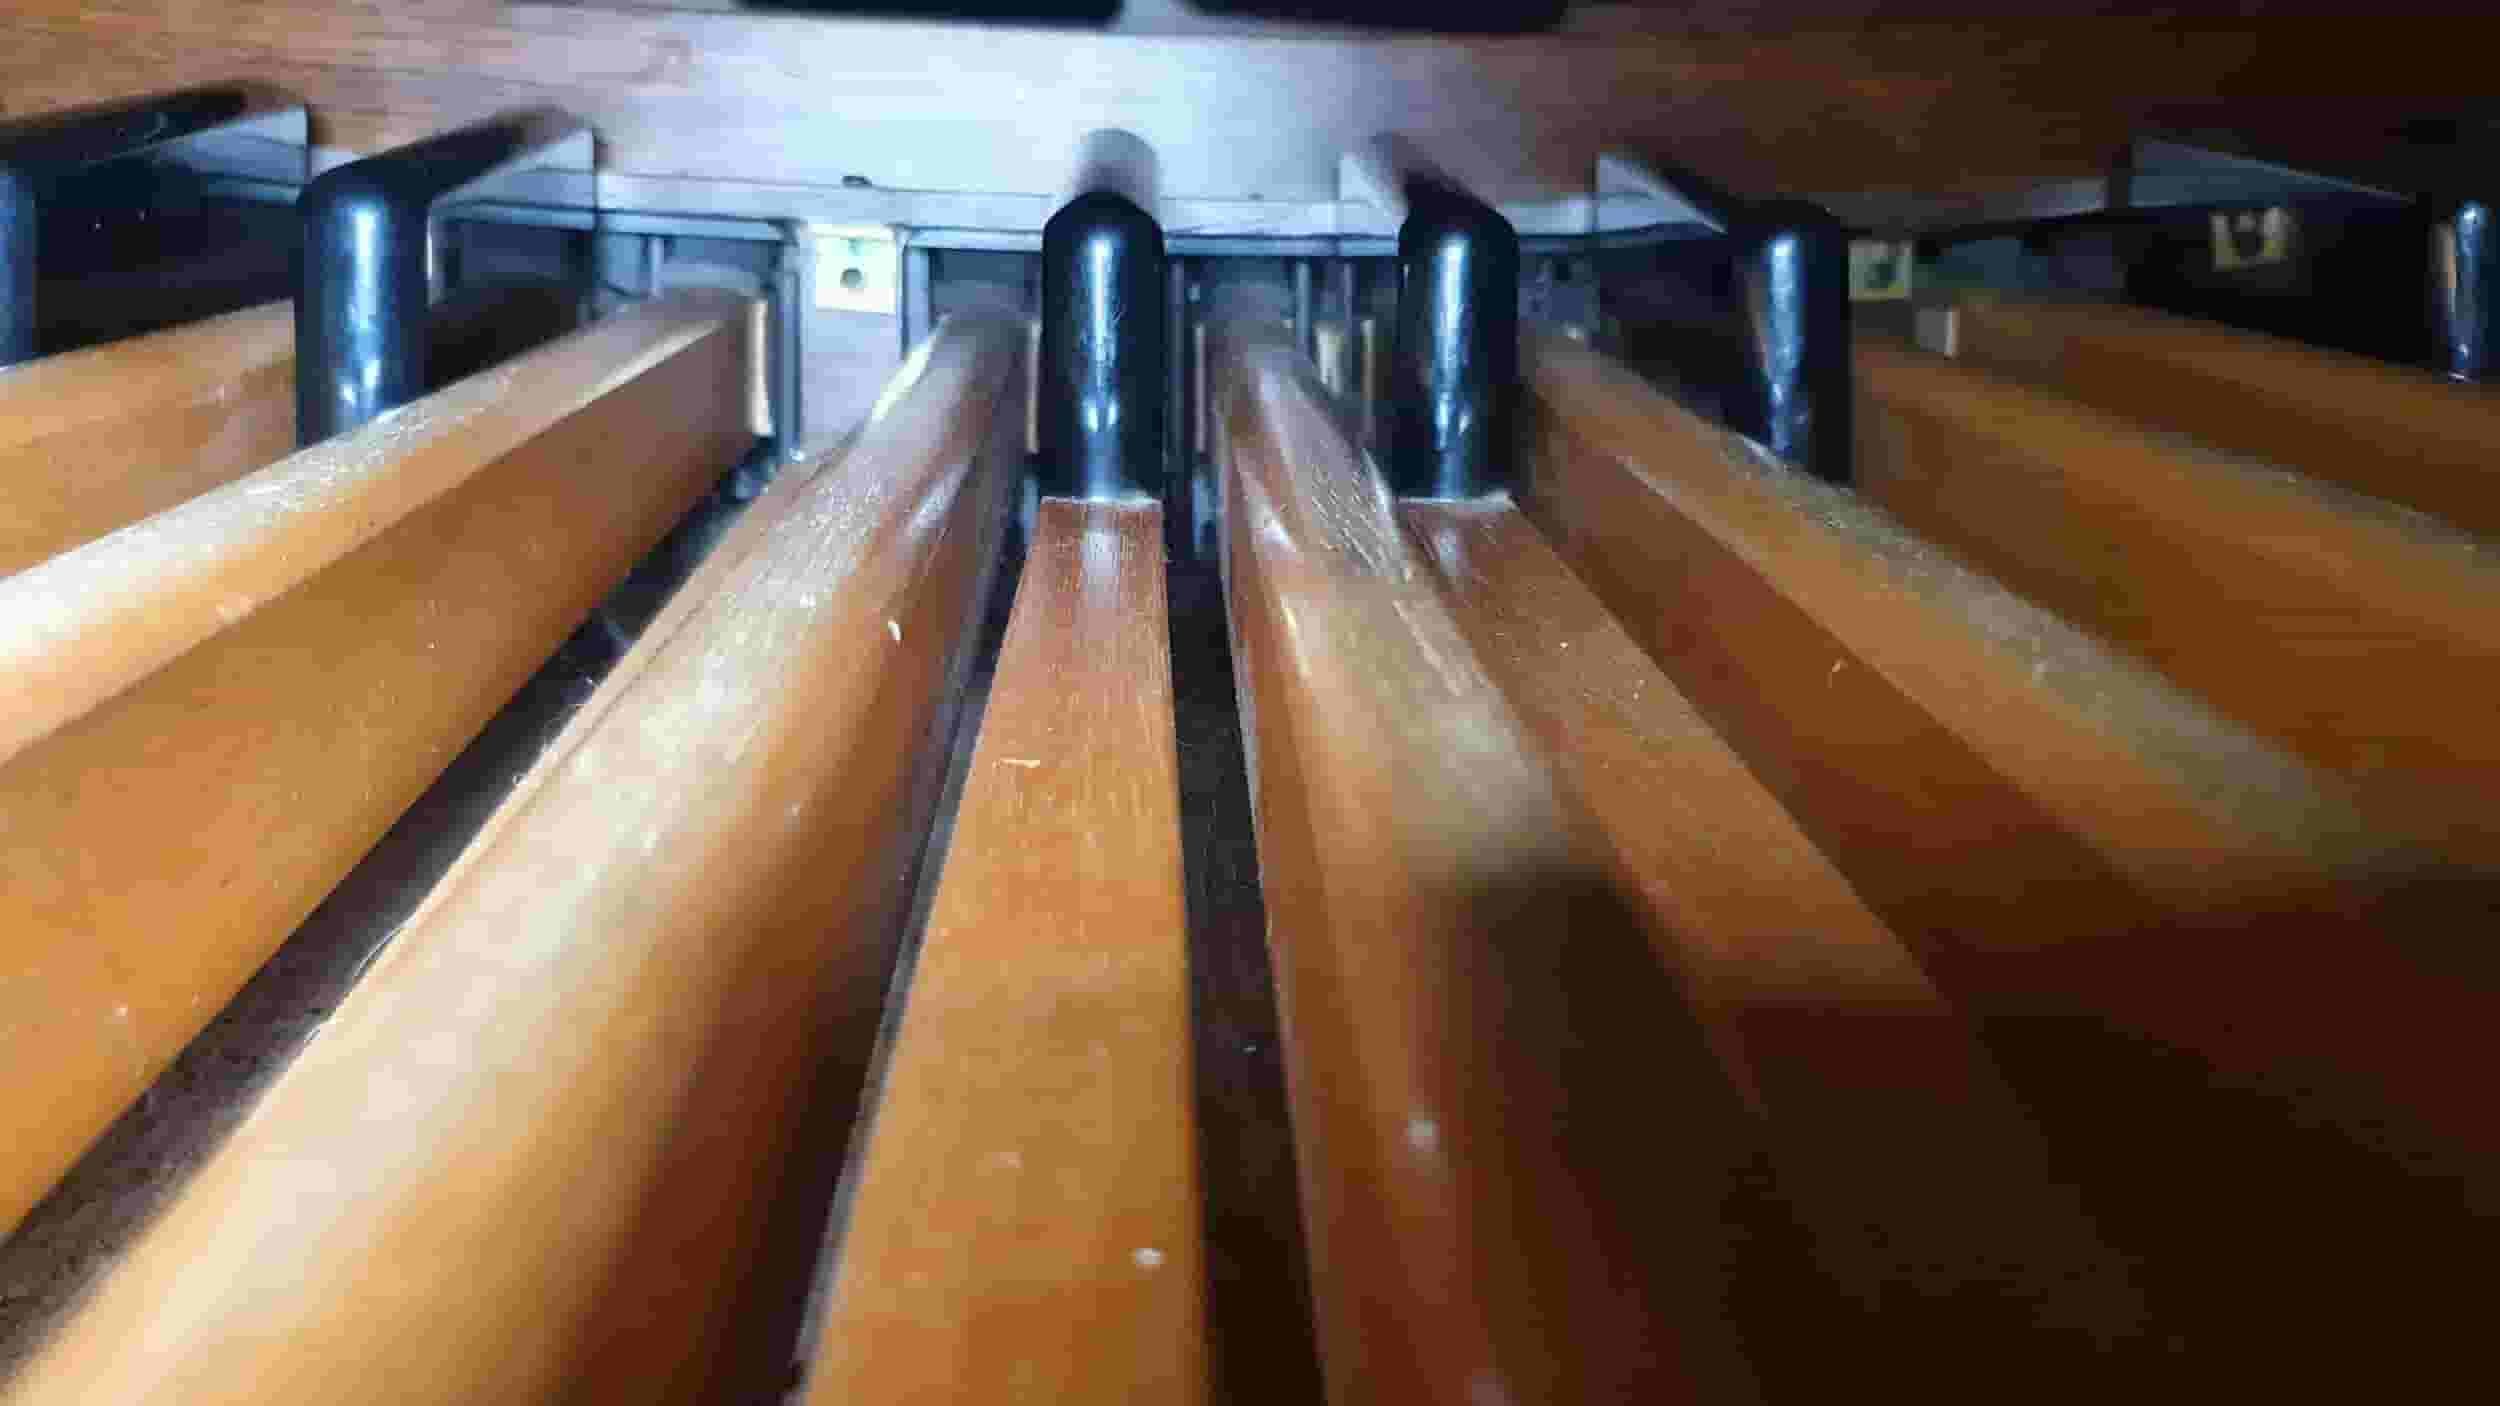 church organ pedals